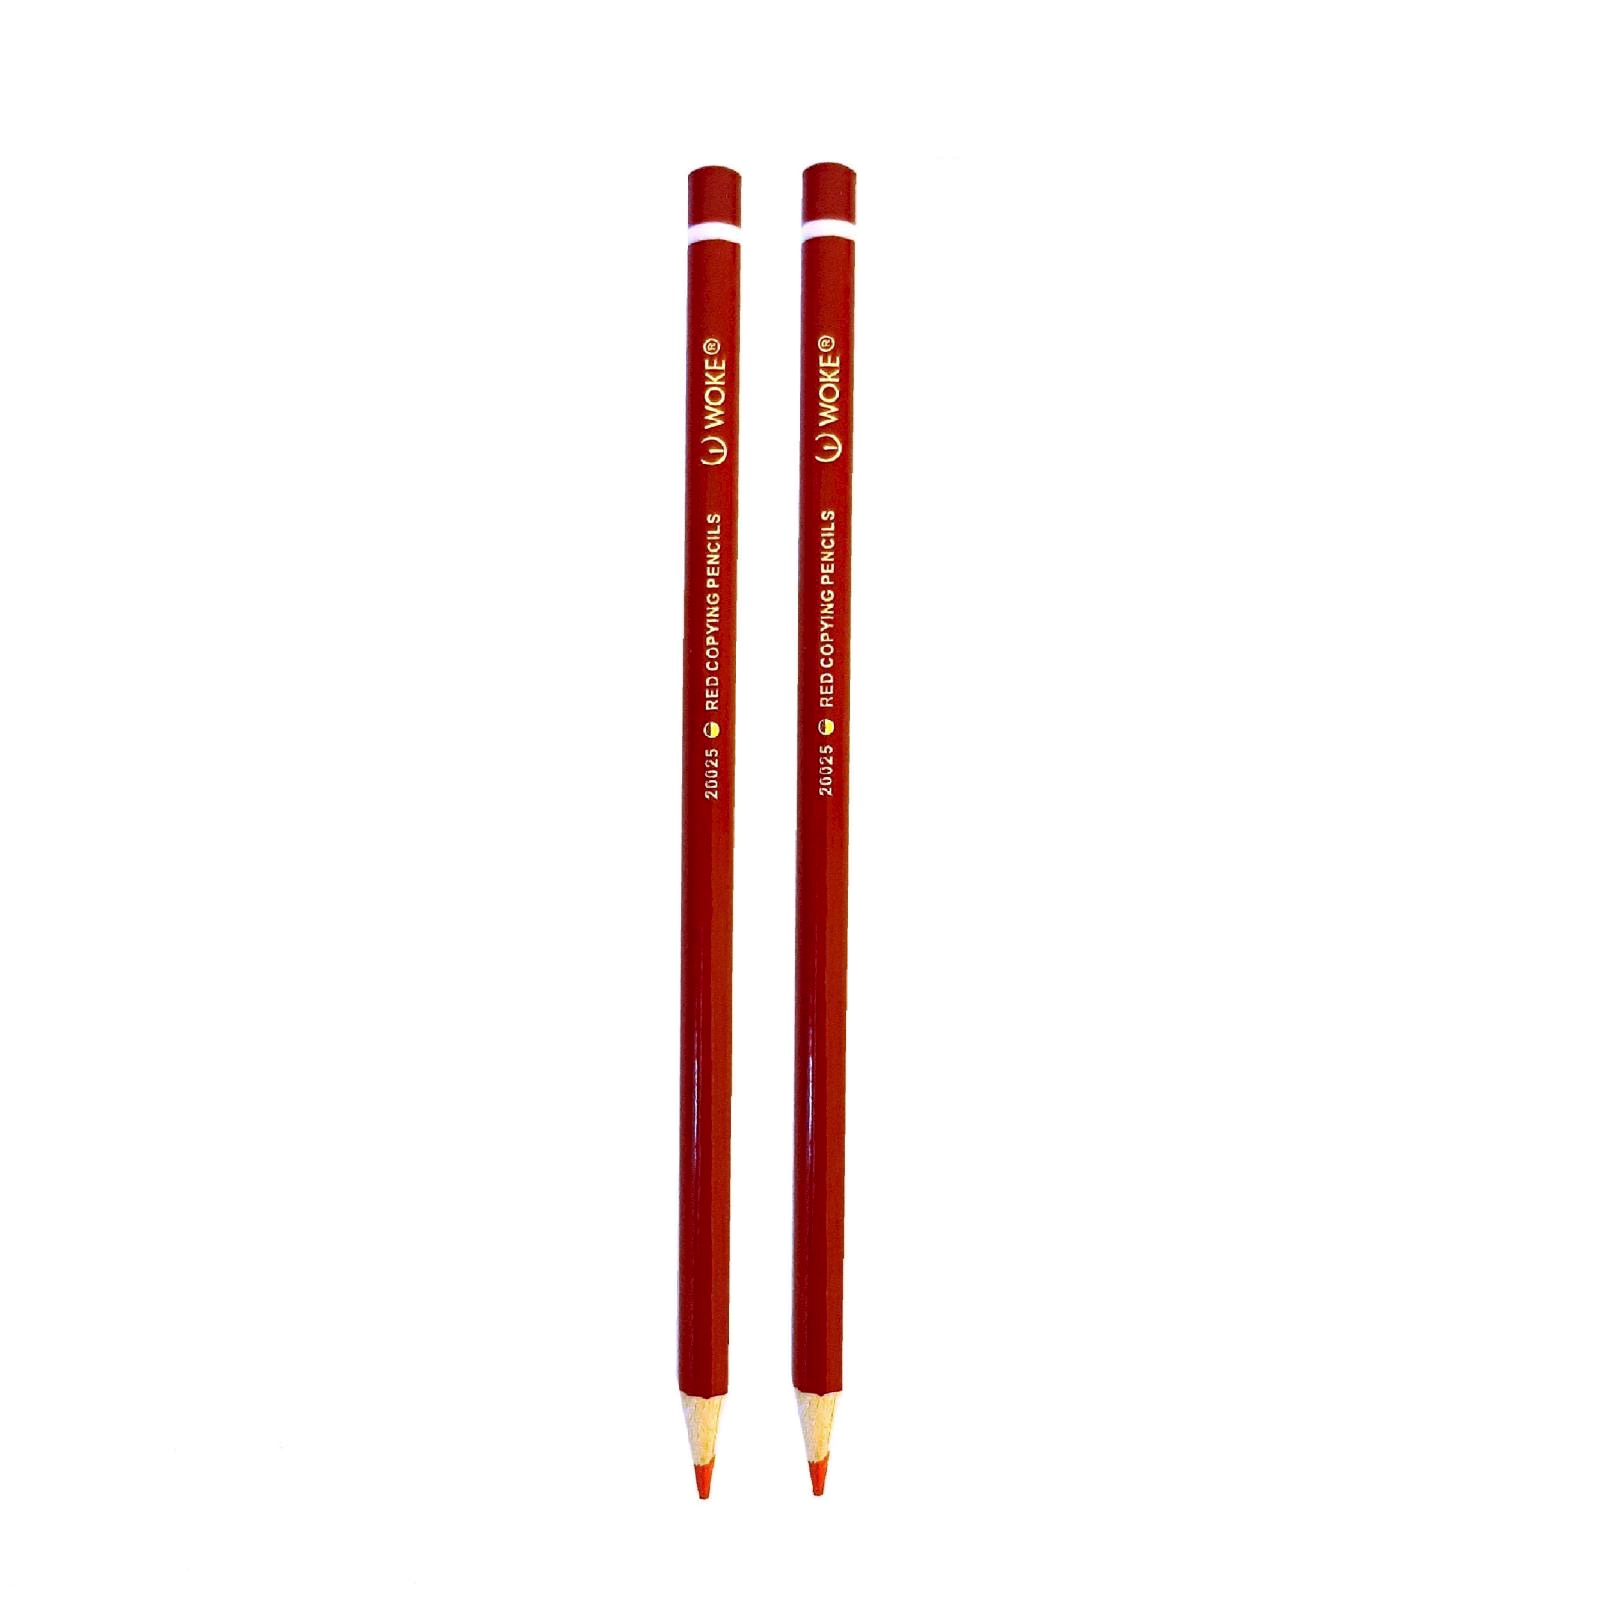 مداد قرمز وک مدل 20025 بسته 2 عددی